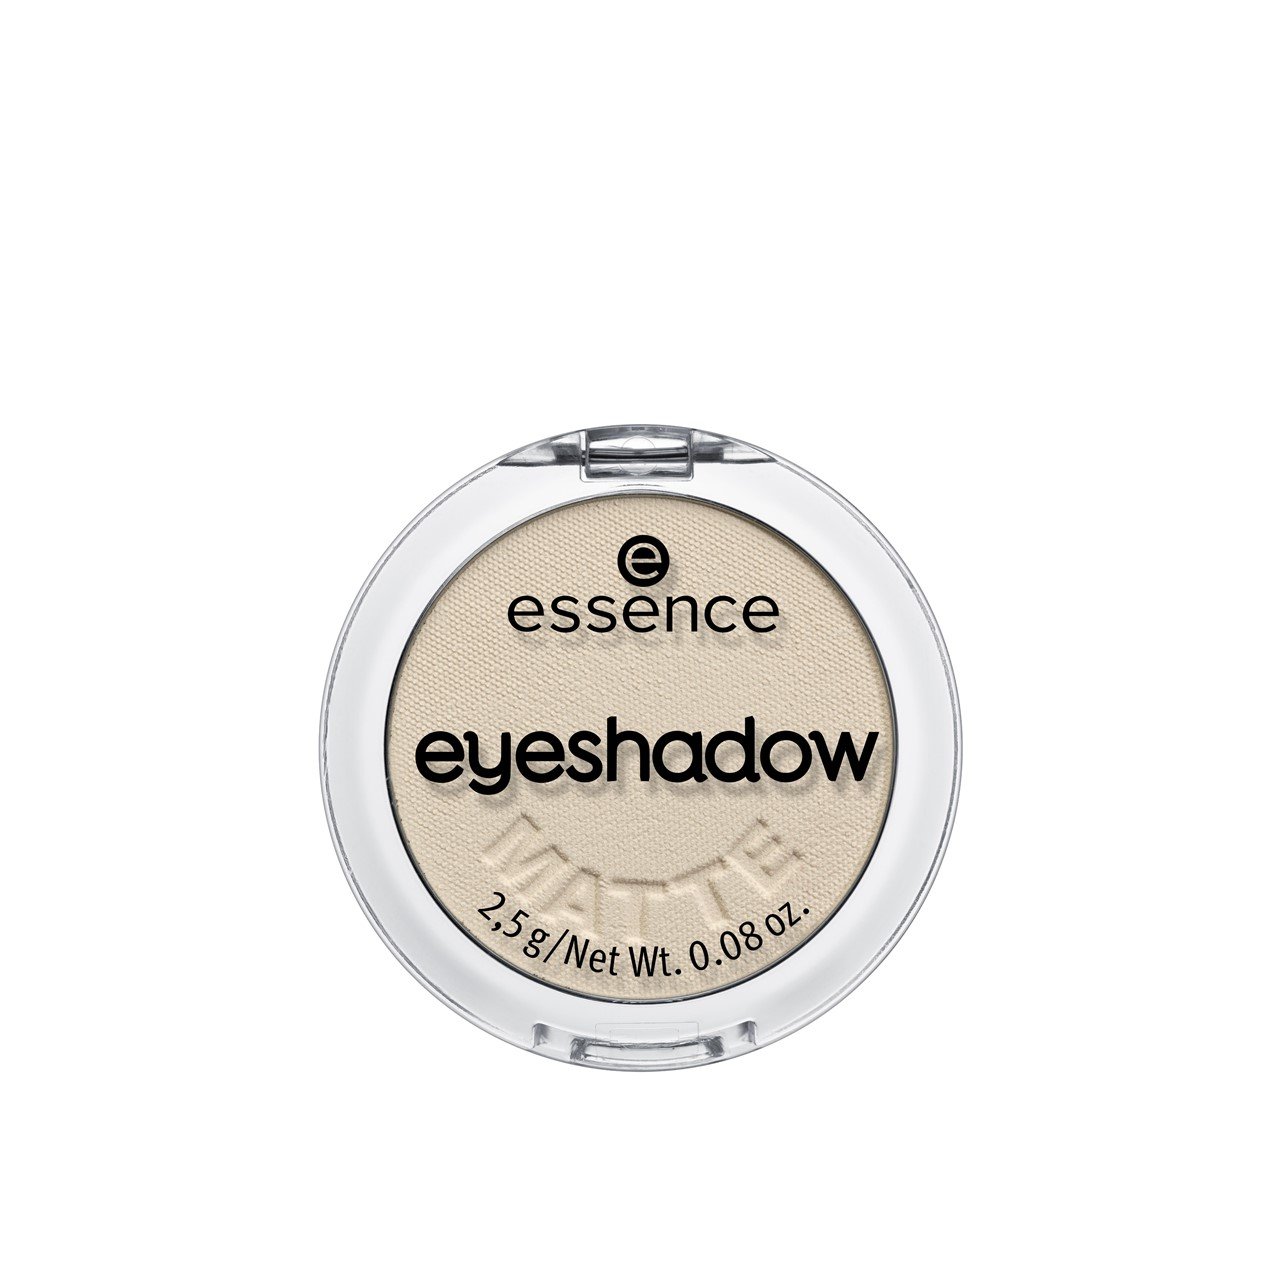 essence Eyeshadow 20 Cream 2.5g